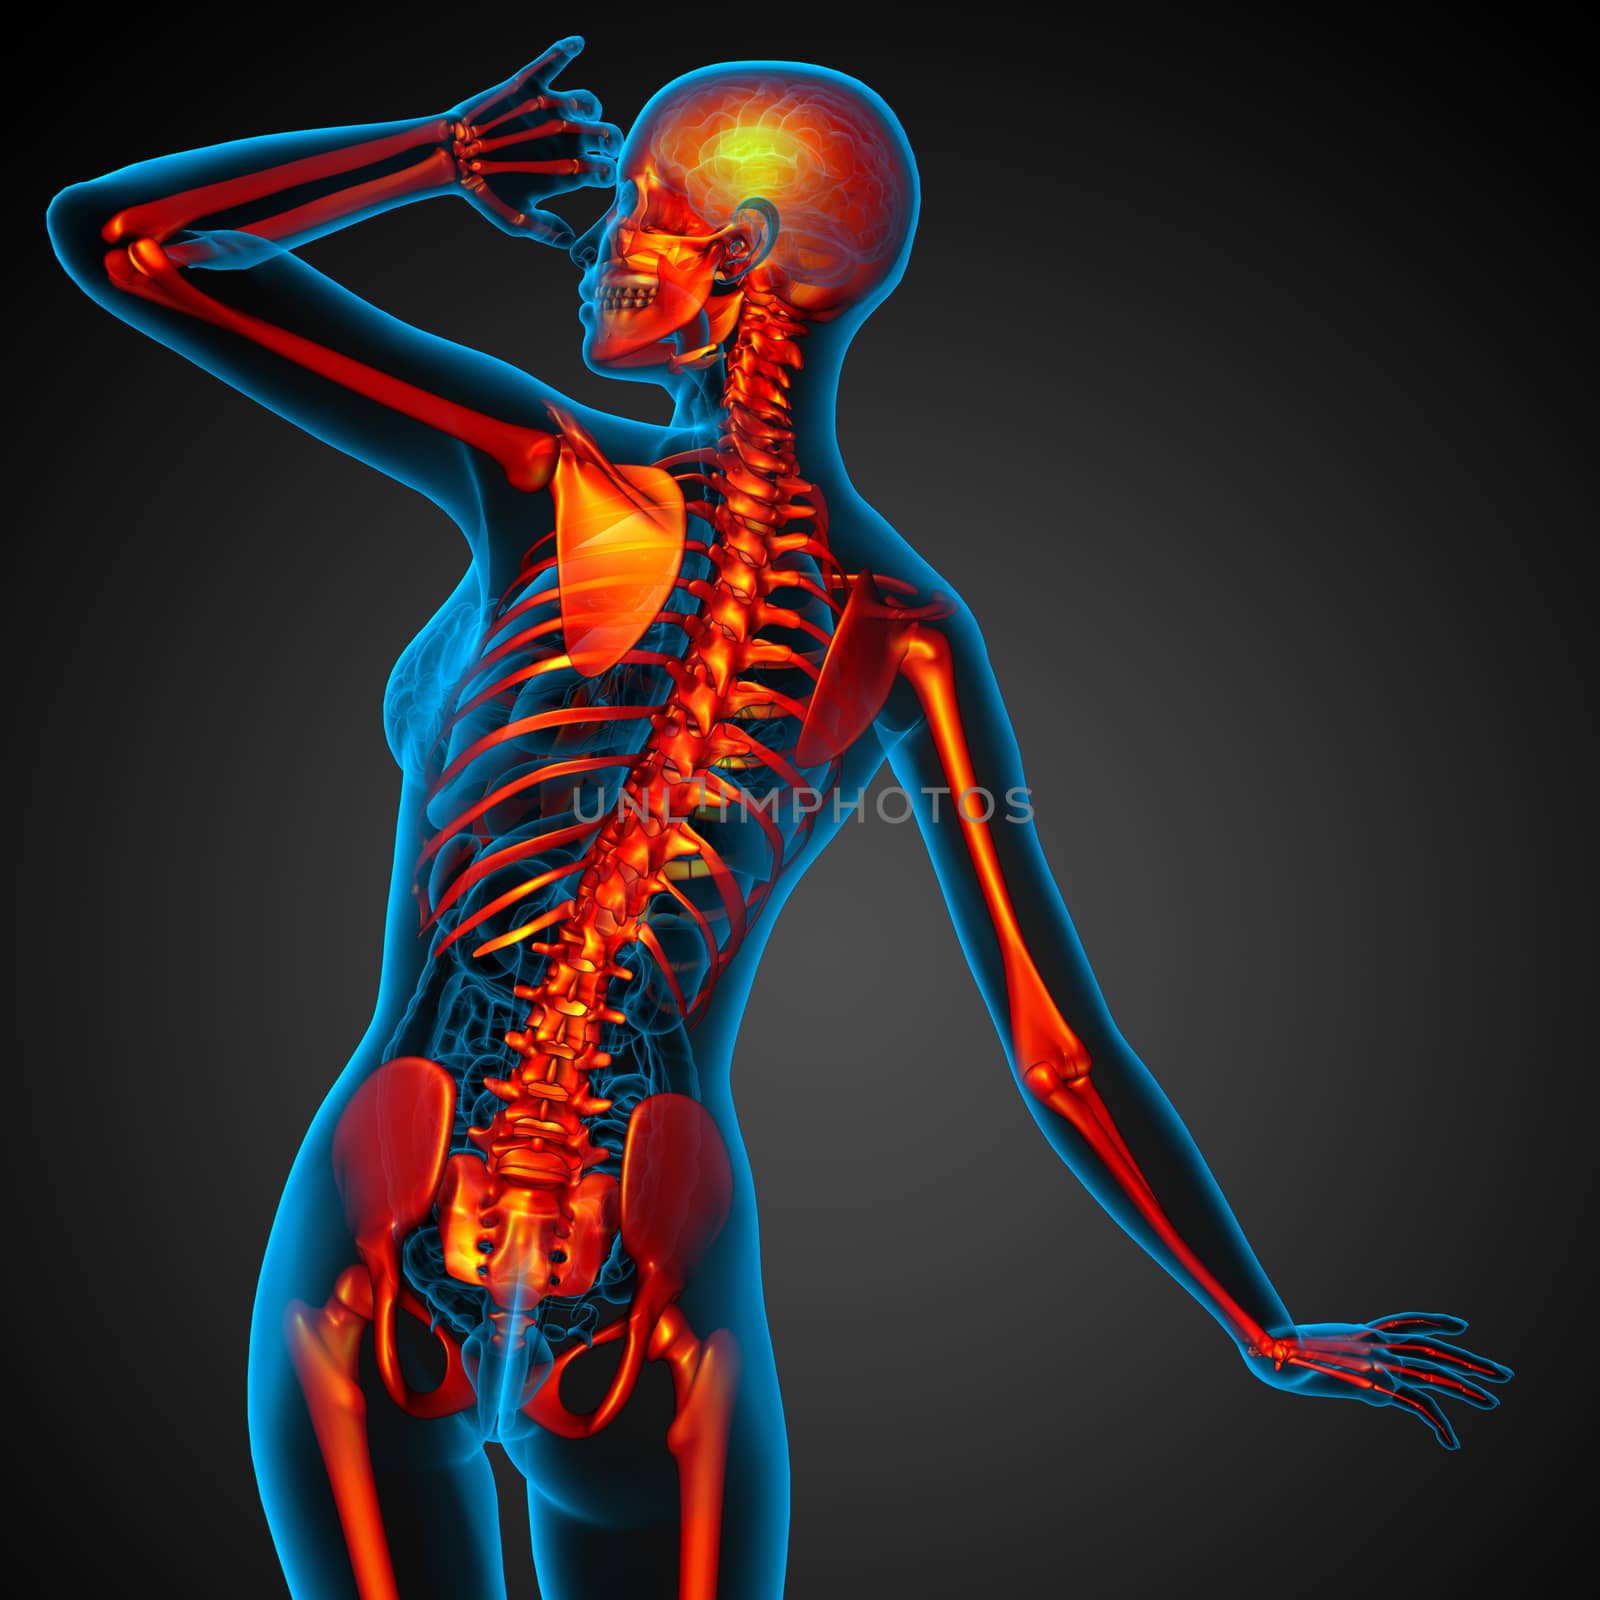 3D medical illustration of the human skeleton - back view